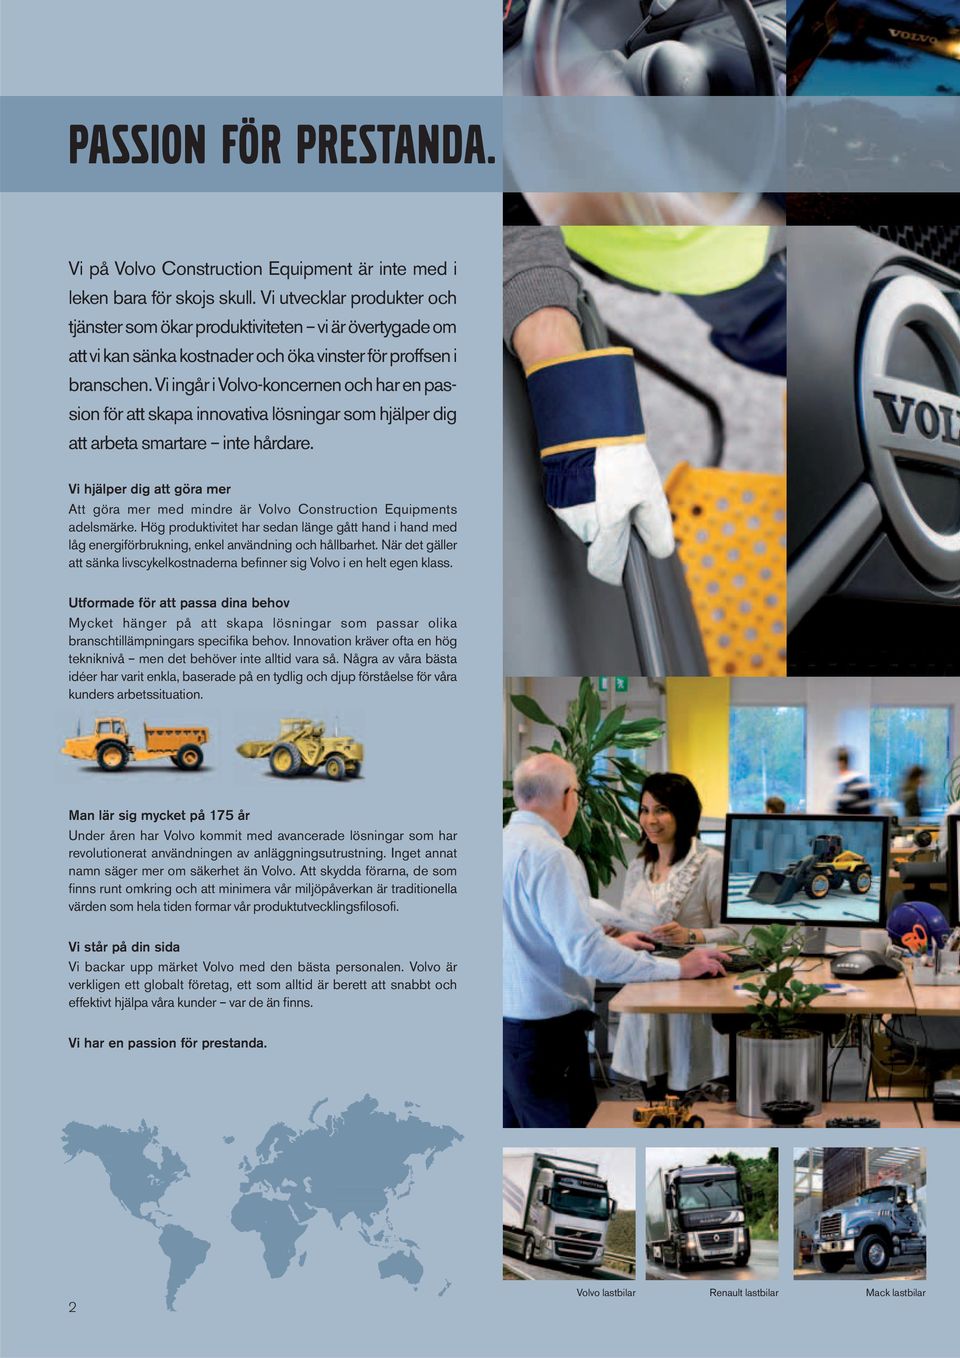 Vi ingår i Volvo-koncernen och har en passion för att skapa innovativa lösningar som hjälper dig att arbeta smartare inte hårdare.